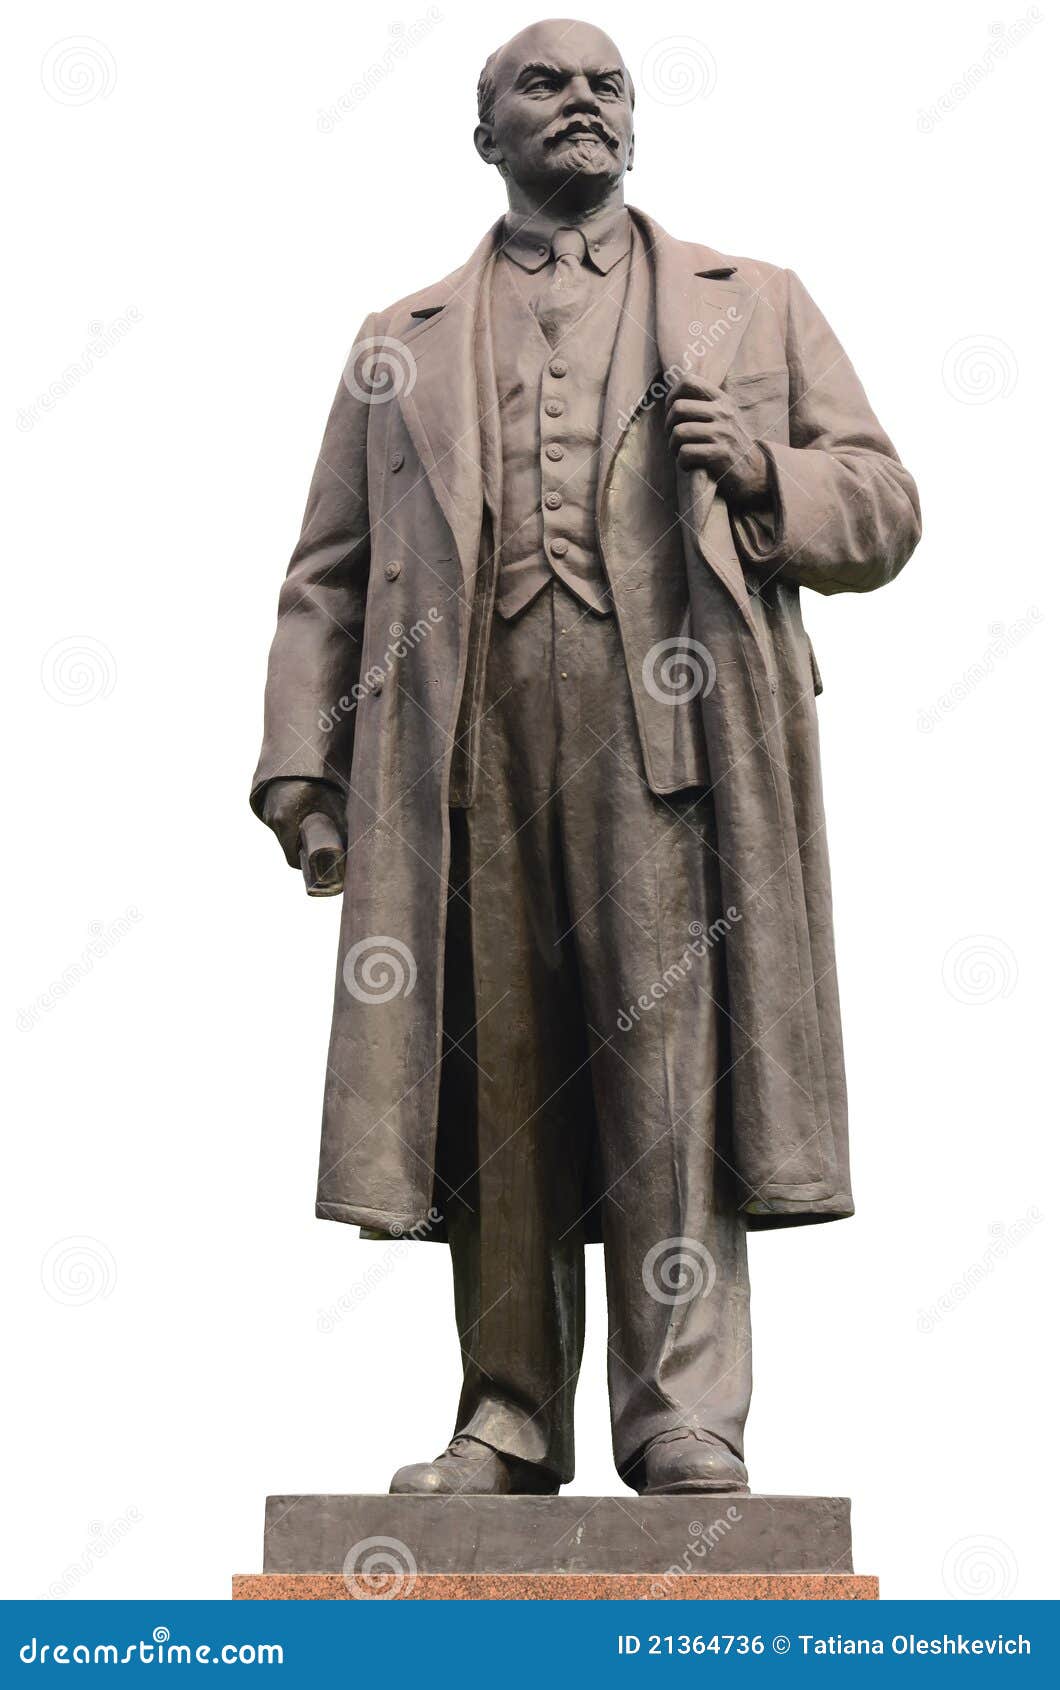 statue of lenin